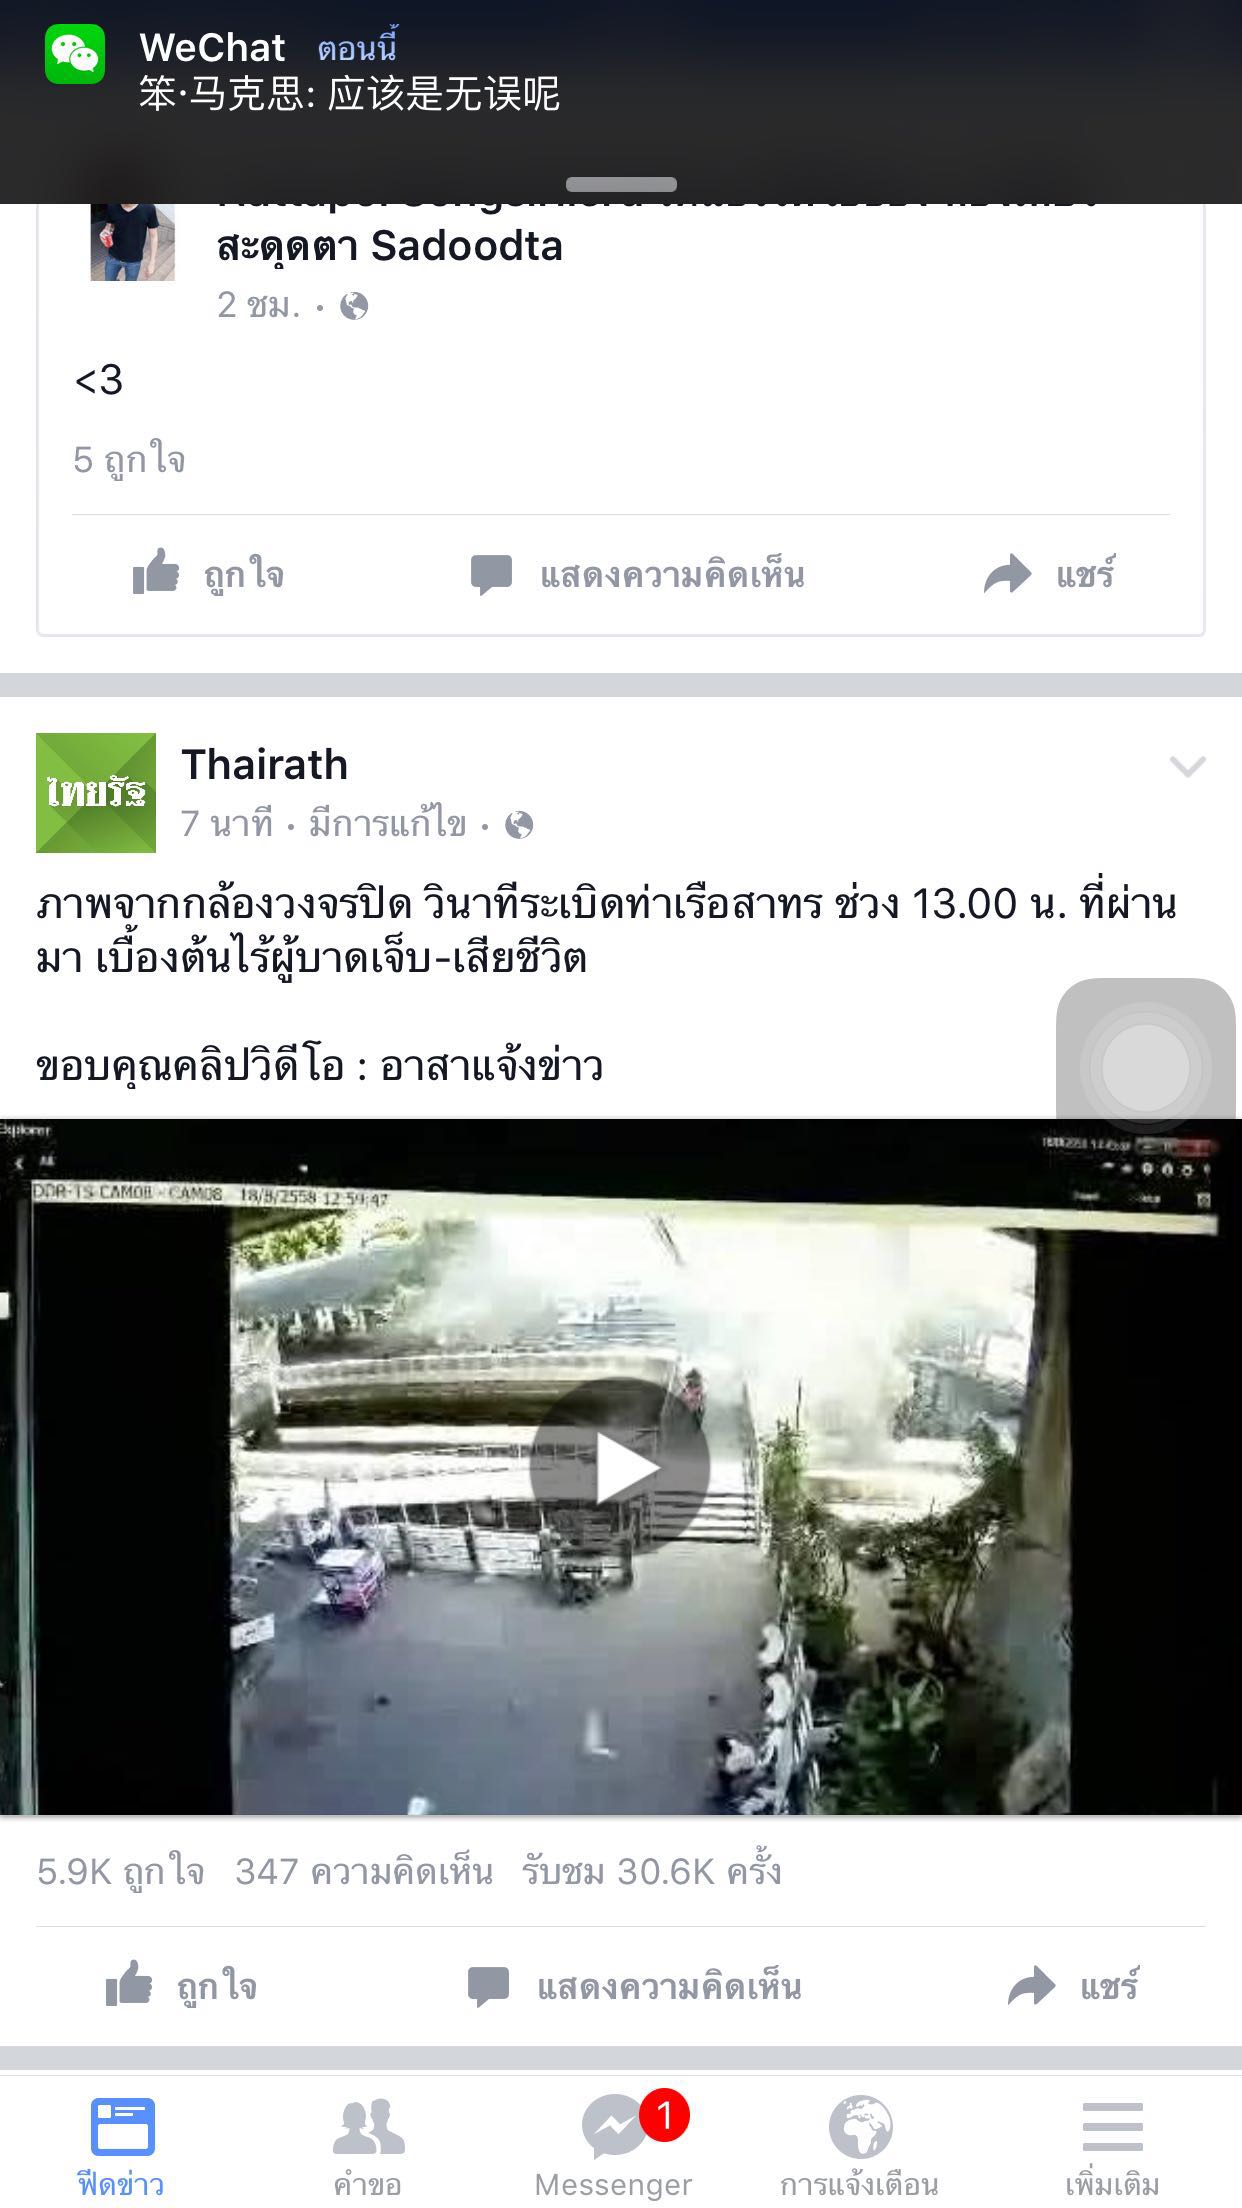 泰国曼谷轻轨站今天发生爆炸 无人伤亡